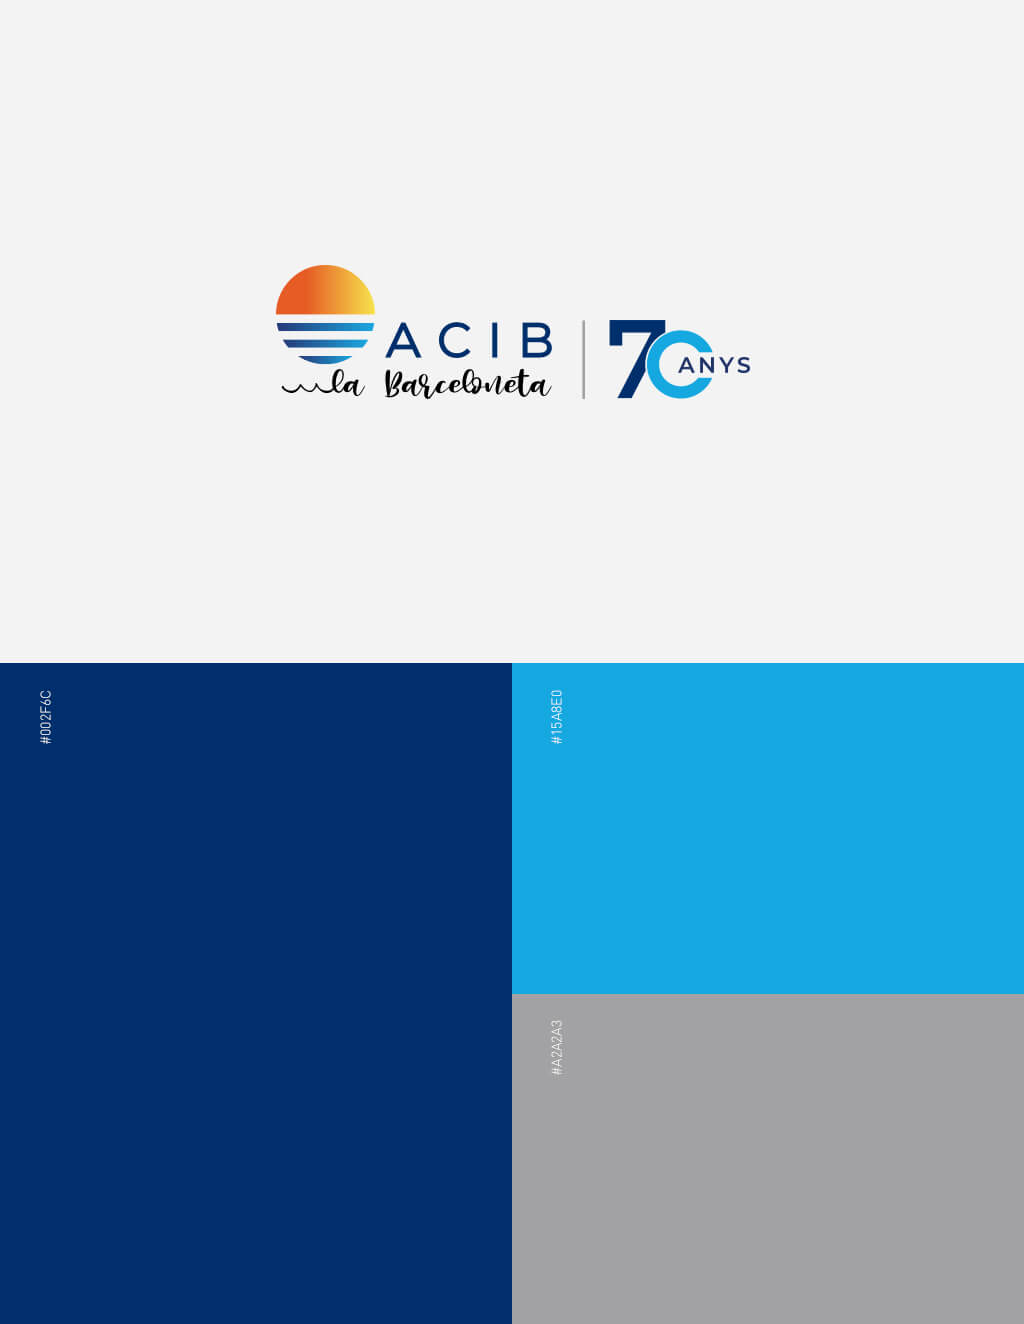 ACIB - 70 años Imagen Corporativa